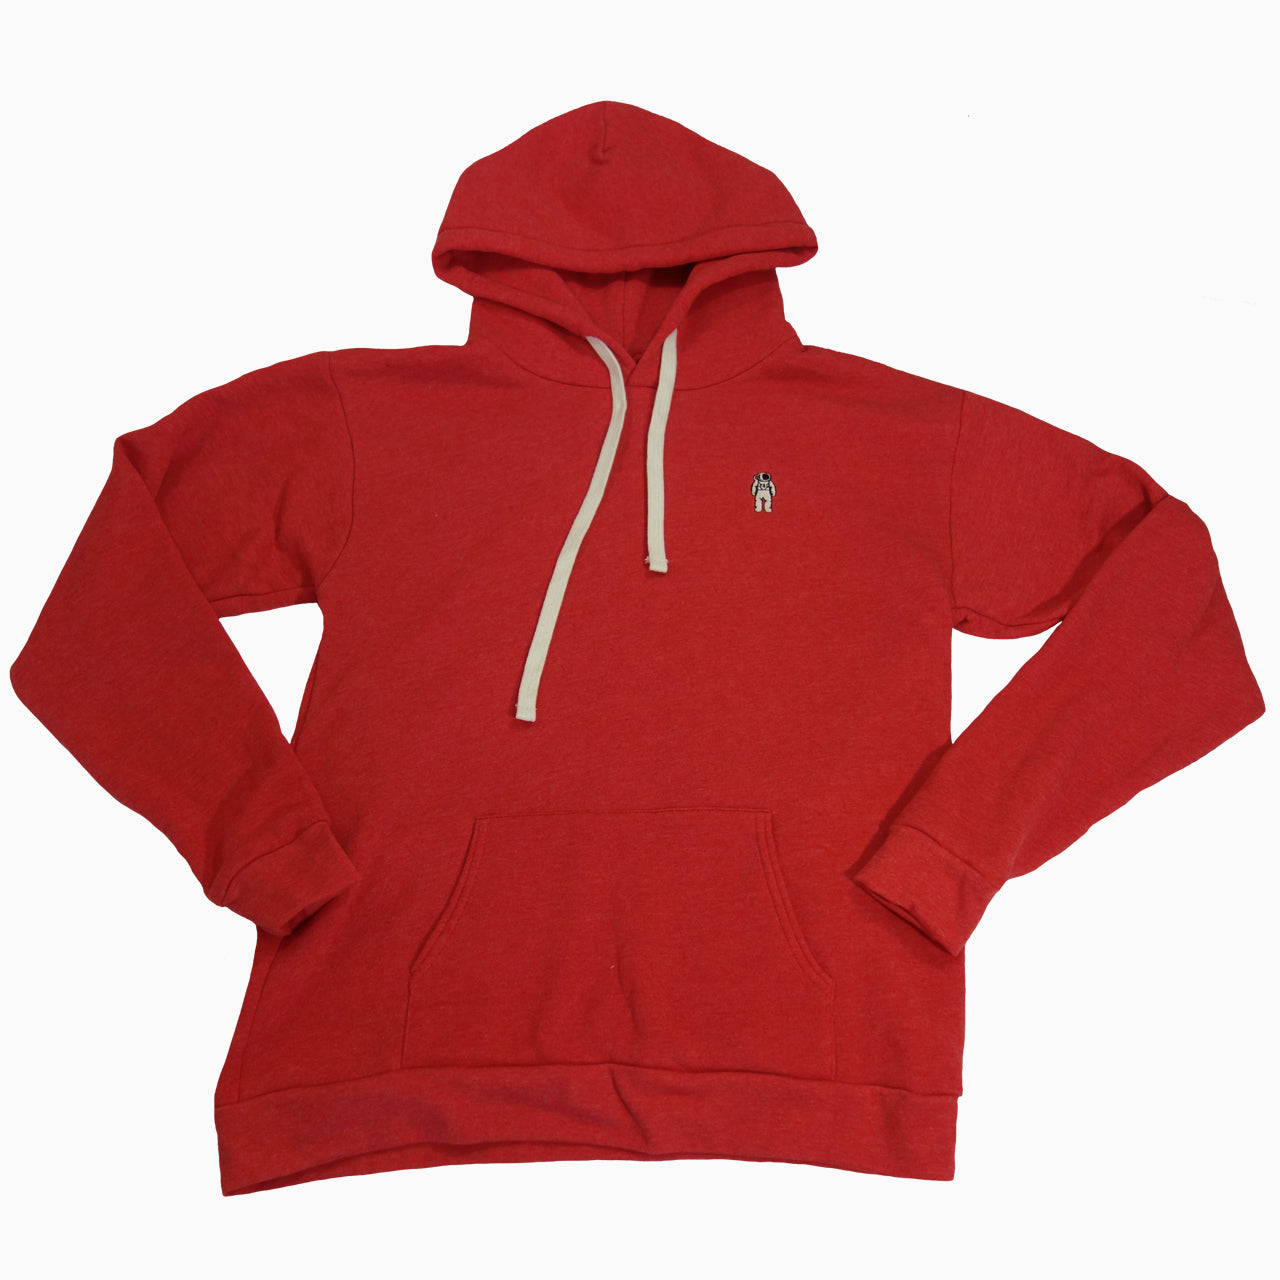 Red Planet Hoody Sweatshirt (GEN 1)